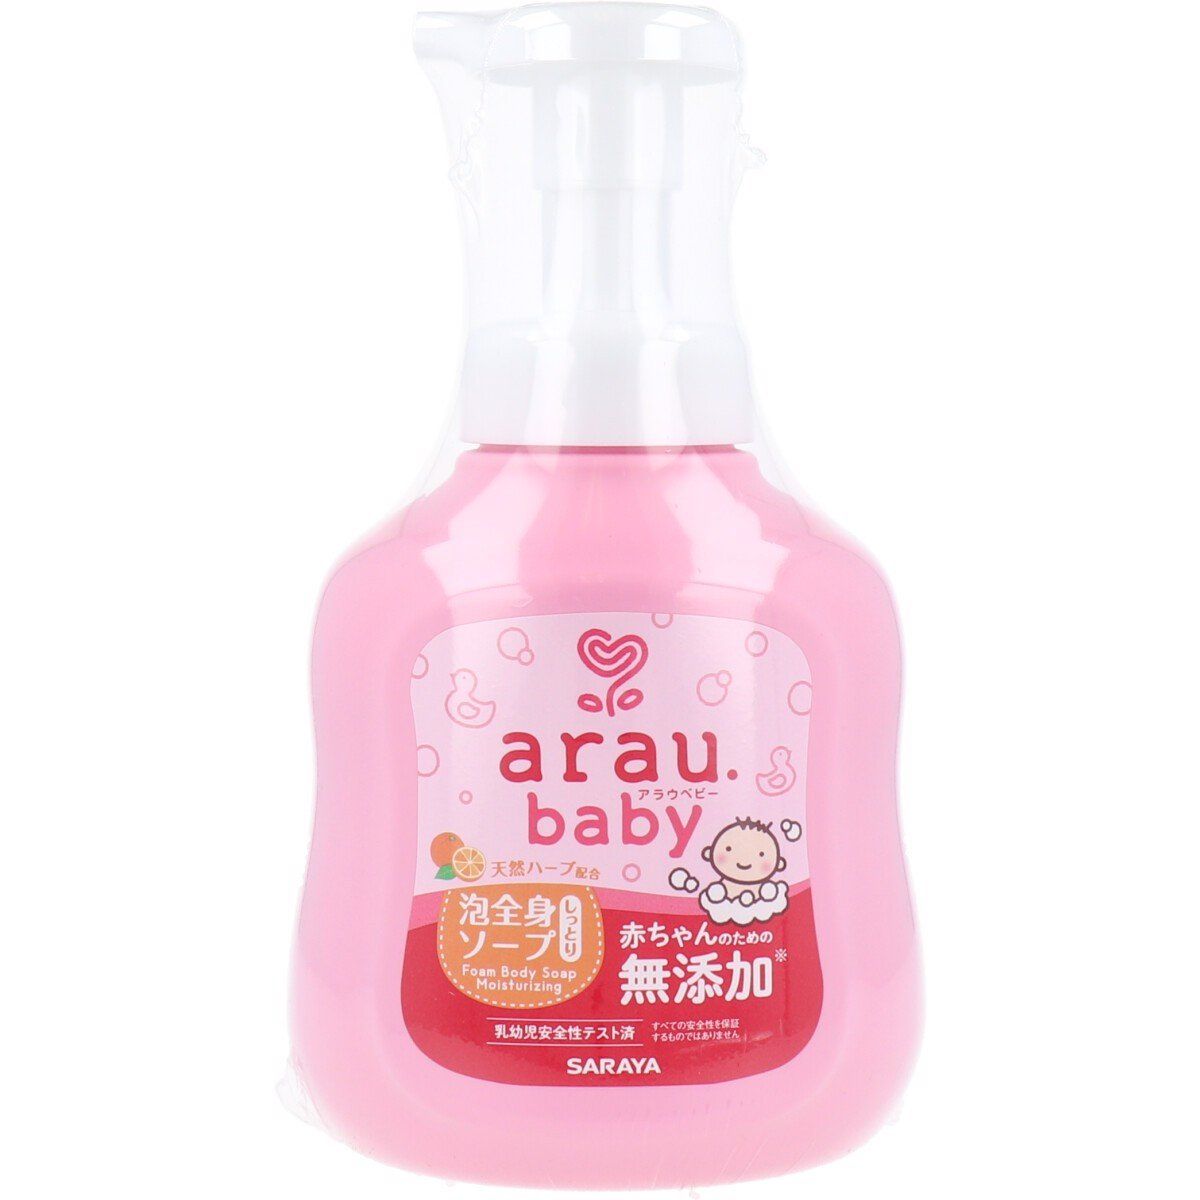  ARAU BABY- Sữa tắm gội thảo mộc dưỡng ẩm Arau baby 450ml 